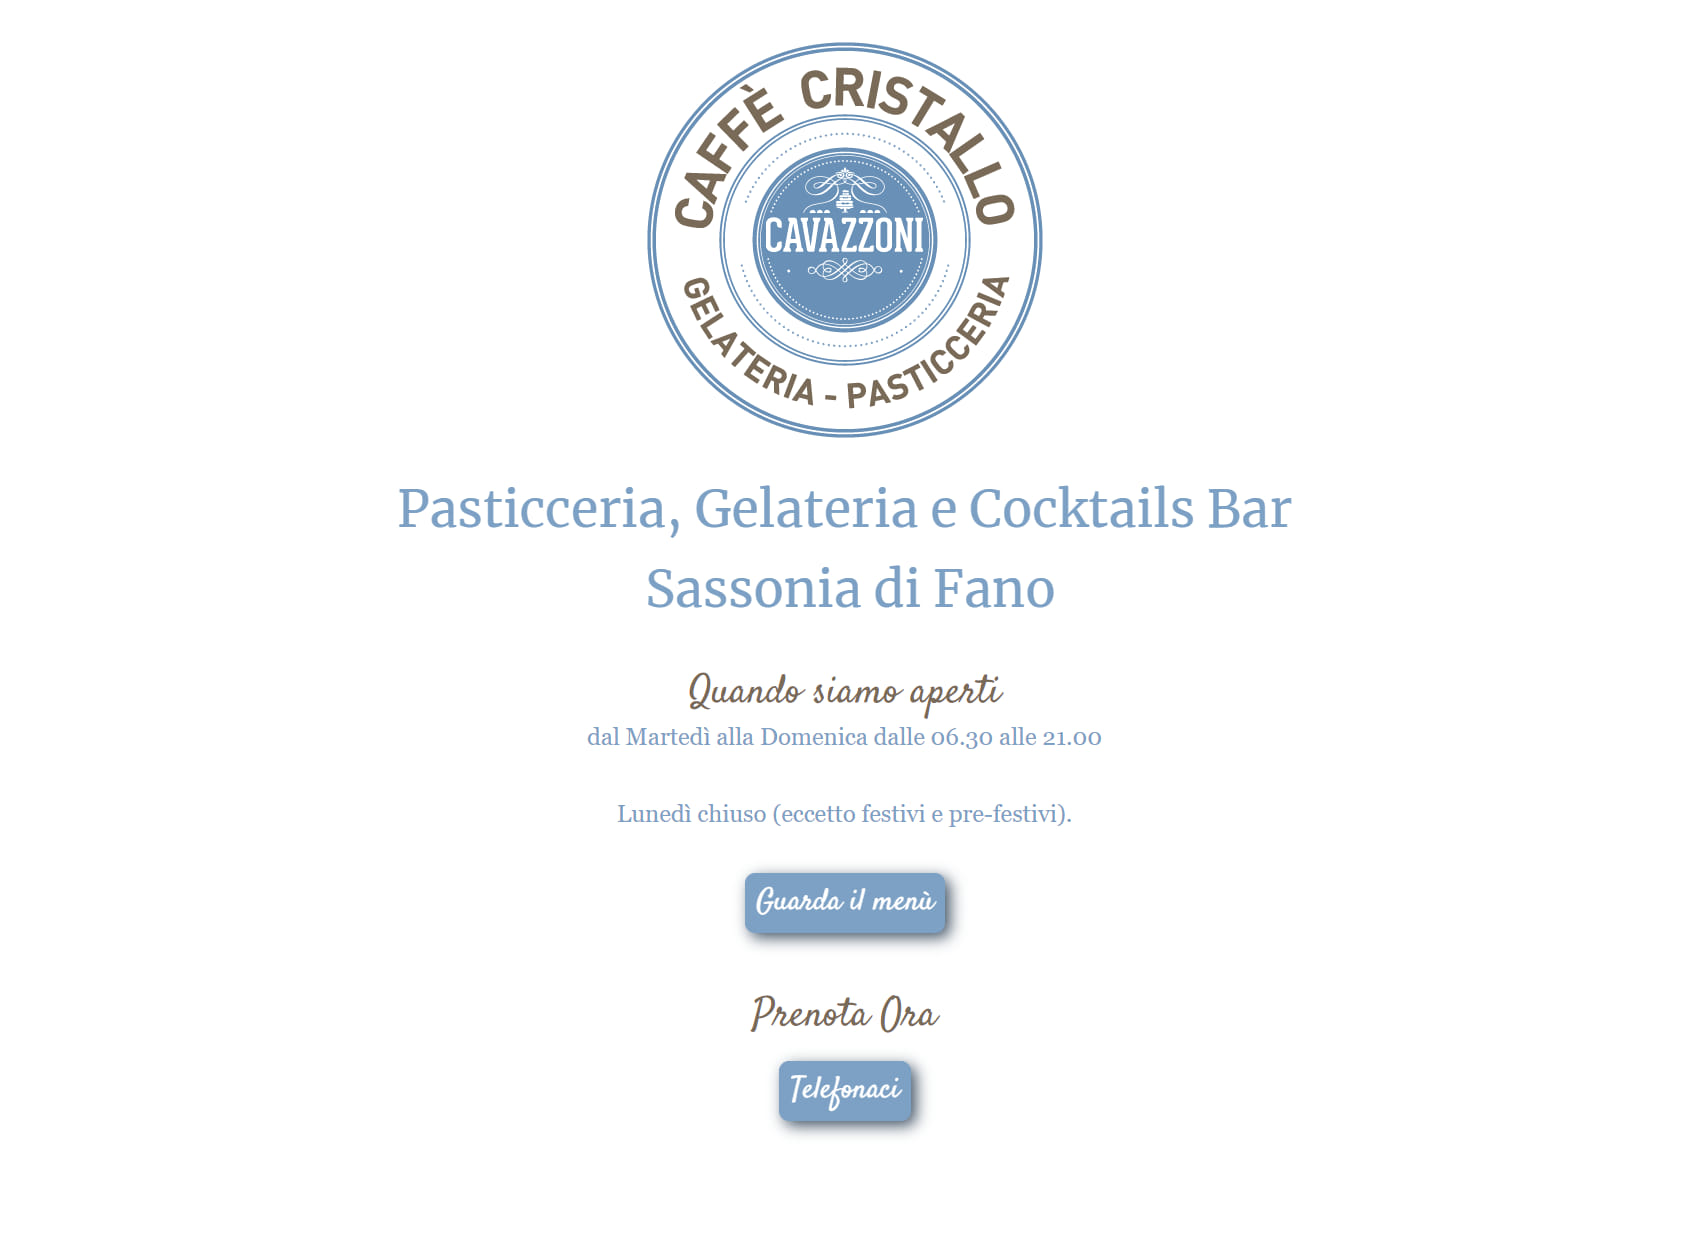 Caffè Cristallo - Gelateria Pasticceria by Cavazzoni